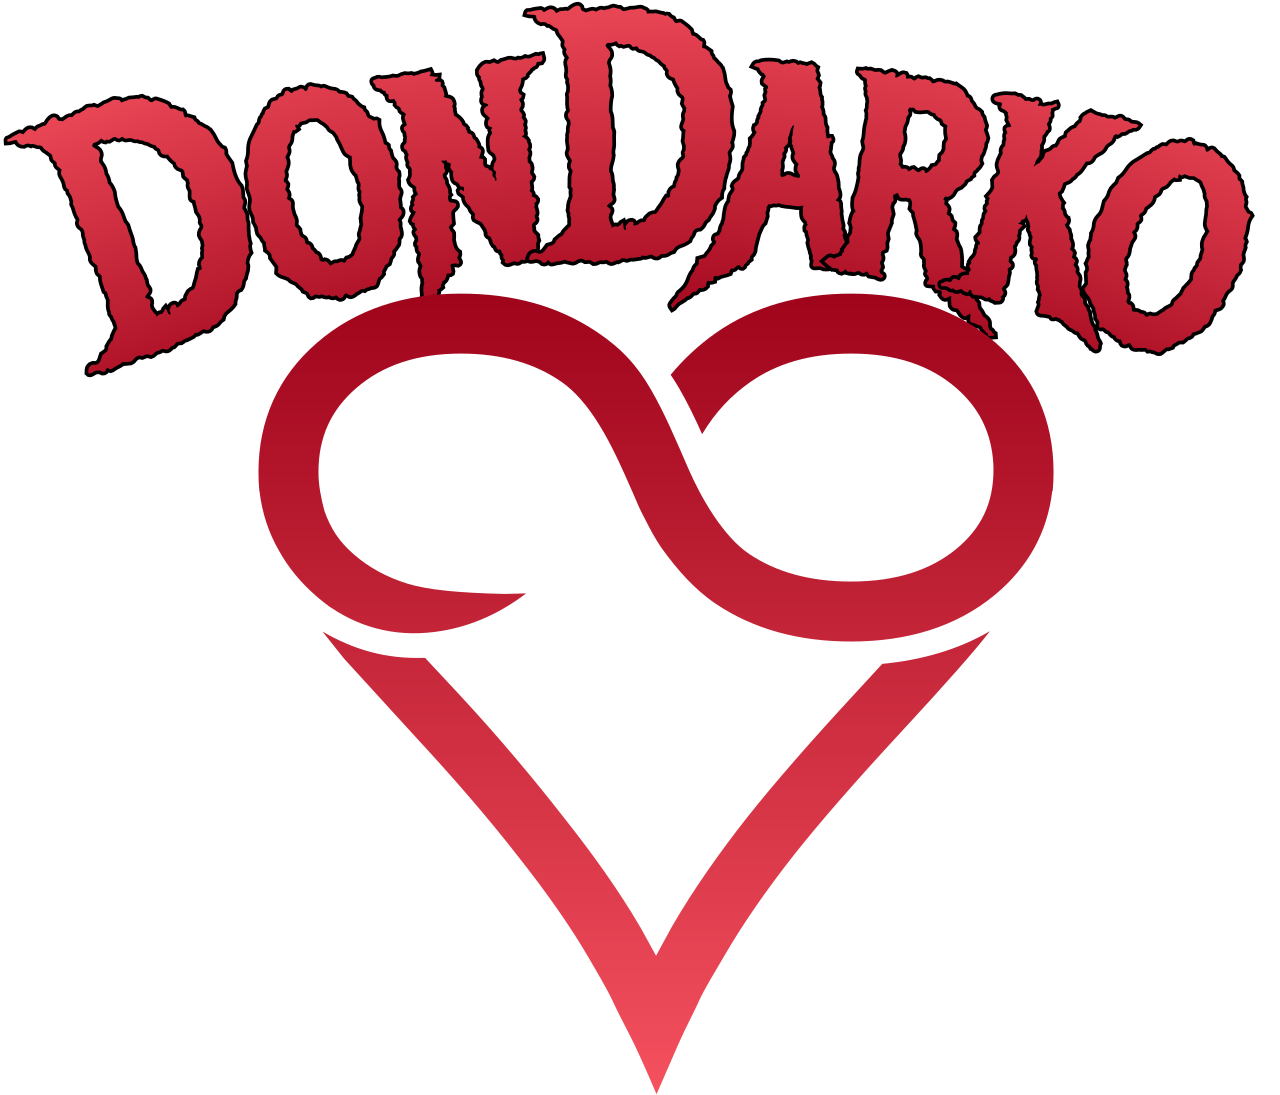 DonDarko's logo